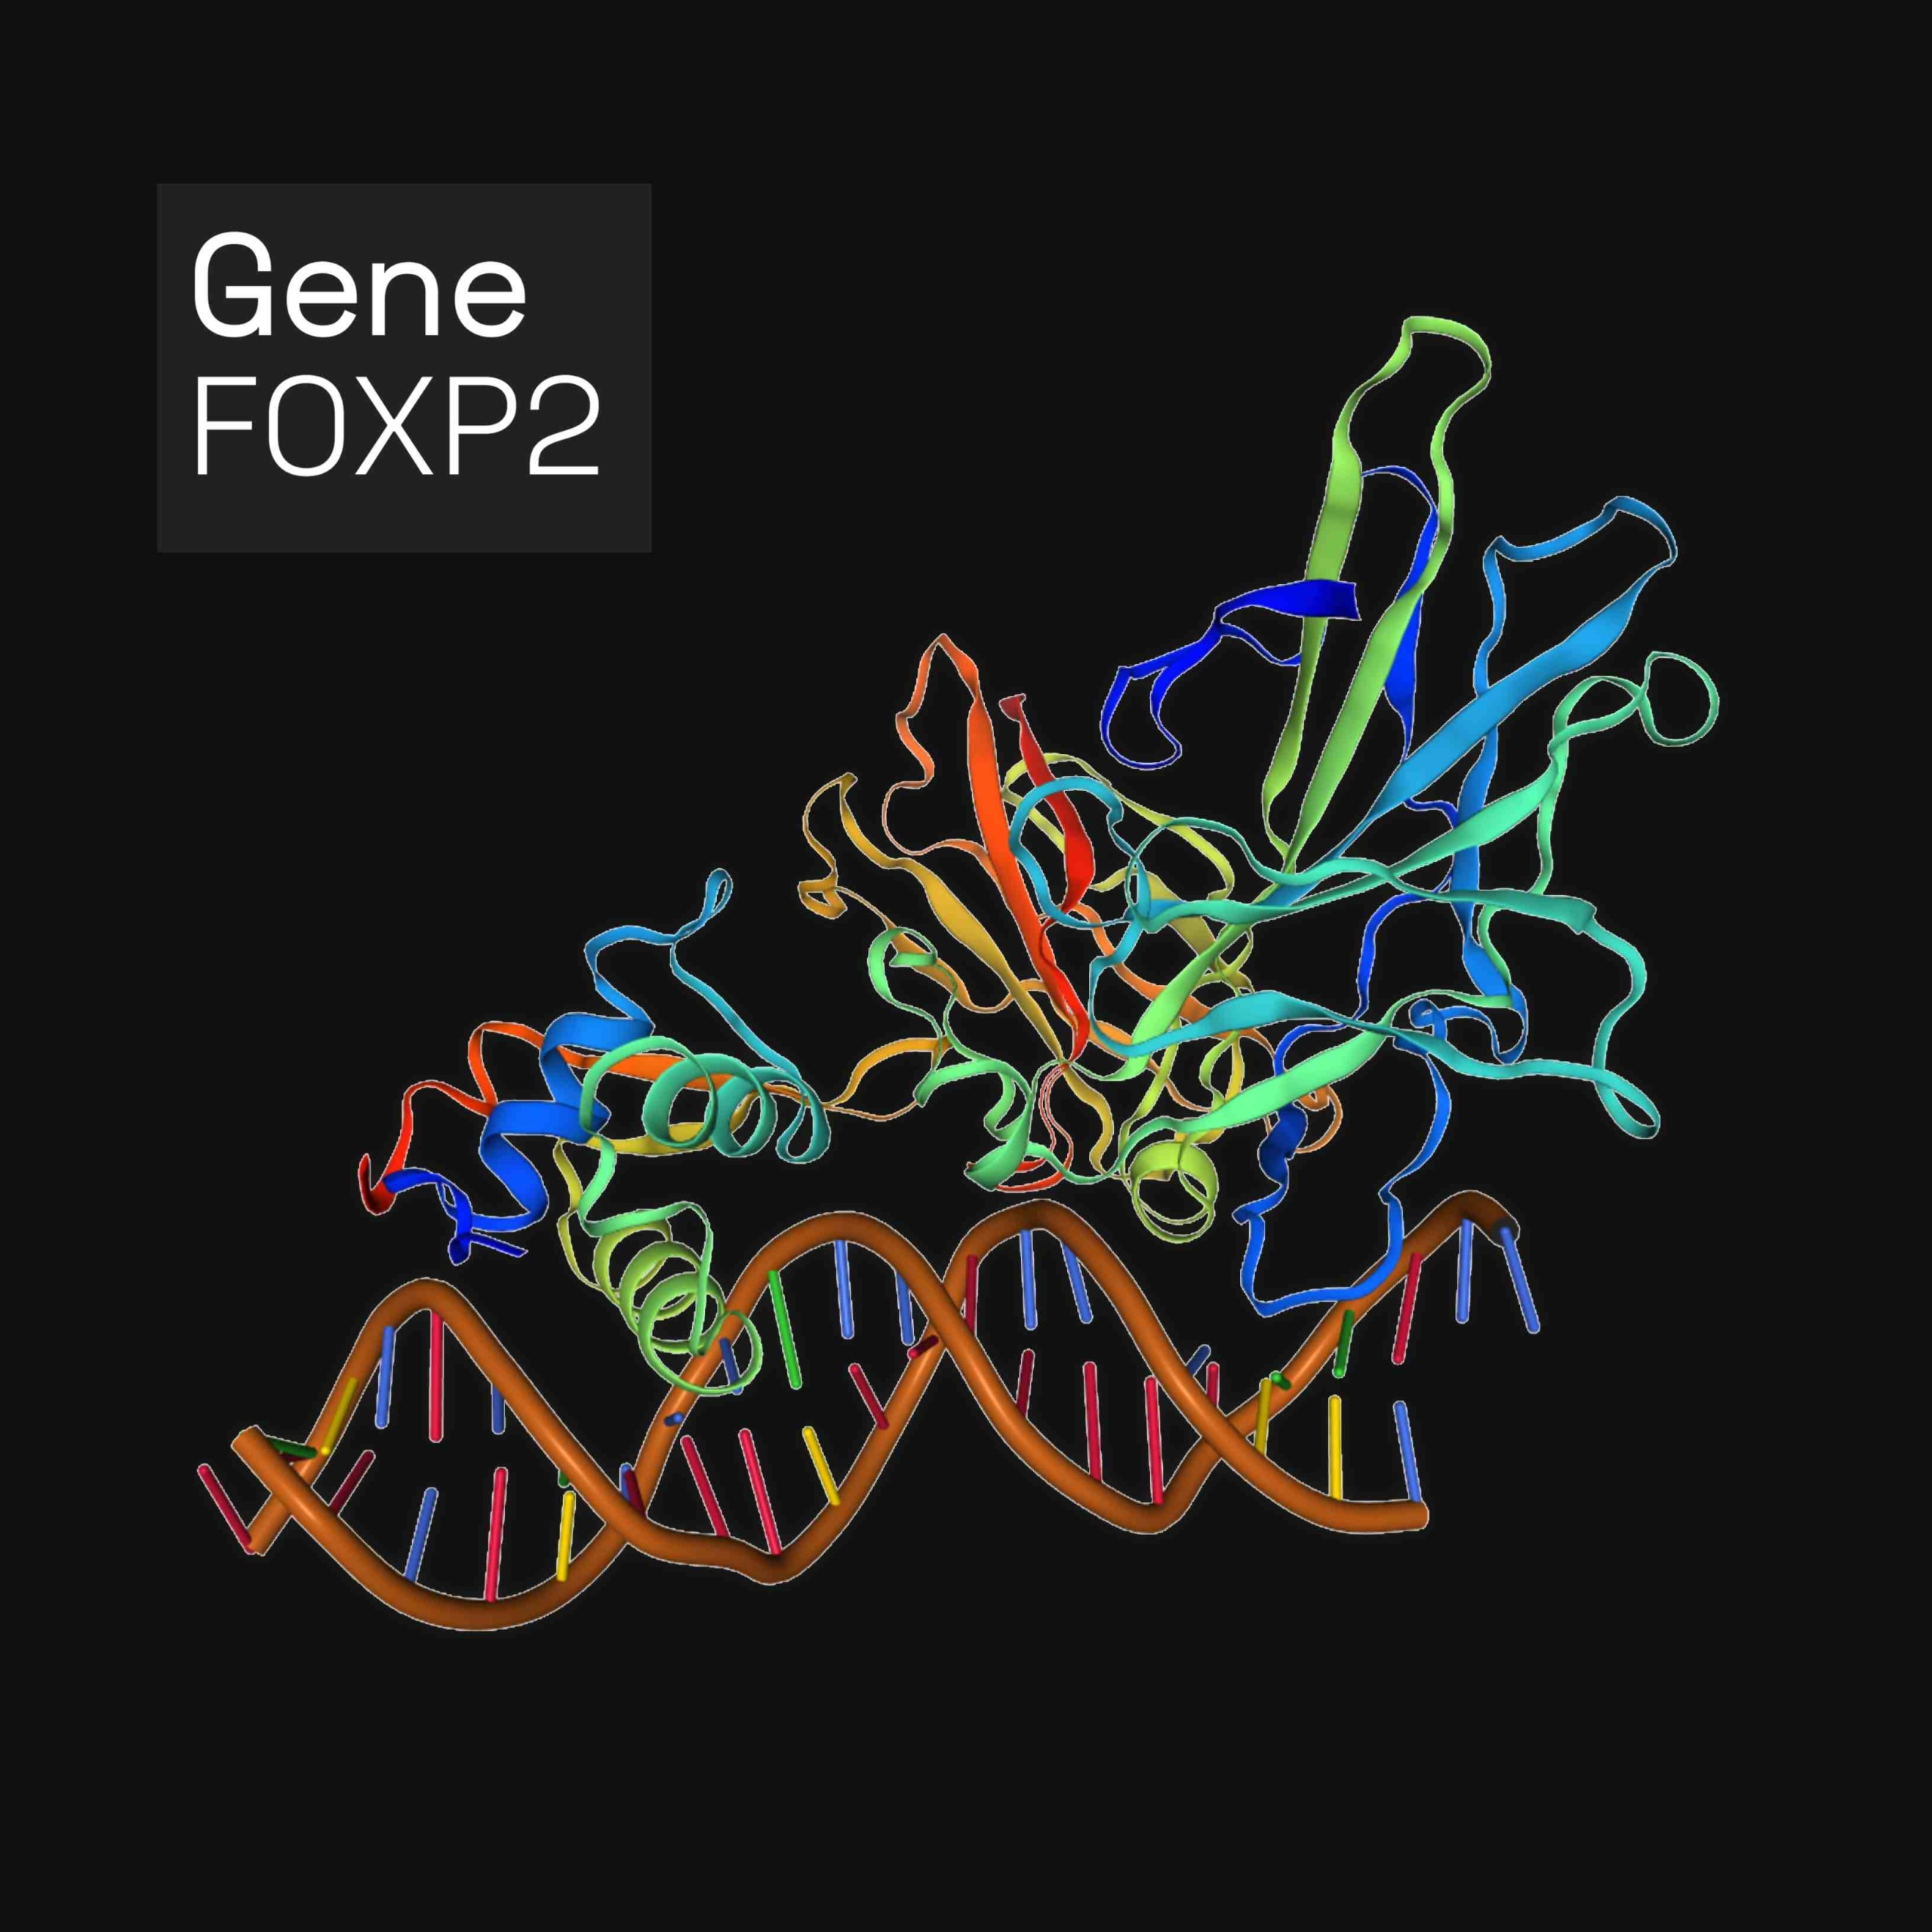 فورڪ هيڊ باڪس پروٽين P2 (FOXP2) ھڪڙو پروٽين آھي، جيڪو انسانن ۾، FOXP2 جين پاران انڪوڊ ٿيل آھي. FOXP2 ٽرانڪرپشن فيڪٽرز جي فورڪ هيڊ باڪس فيملي جو ميمبر آهي، پروٽين جيڪي ڊي اين اي سان پابند ٿيڻ سان جين جي اظهار کي منظم ڪن ٿا. اهو دماغ، دل، ڦڦڙن ۽ هضمي سسٽم ۾ ظاهر ٿئي ٿو.